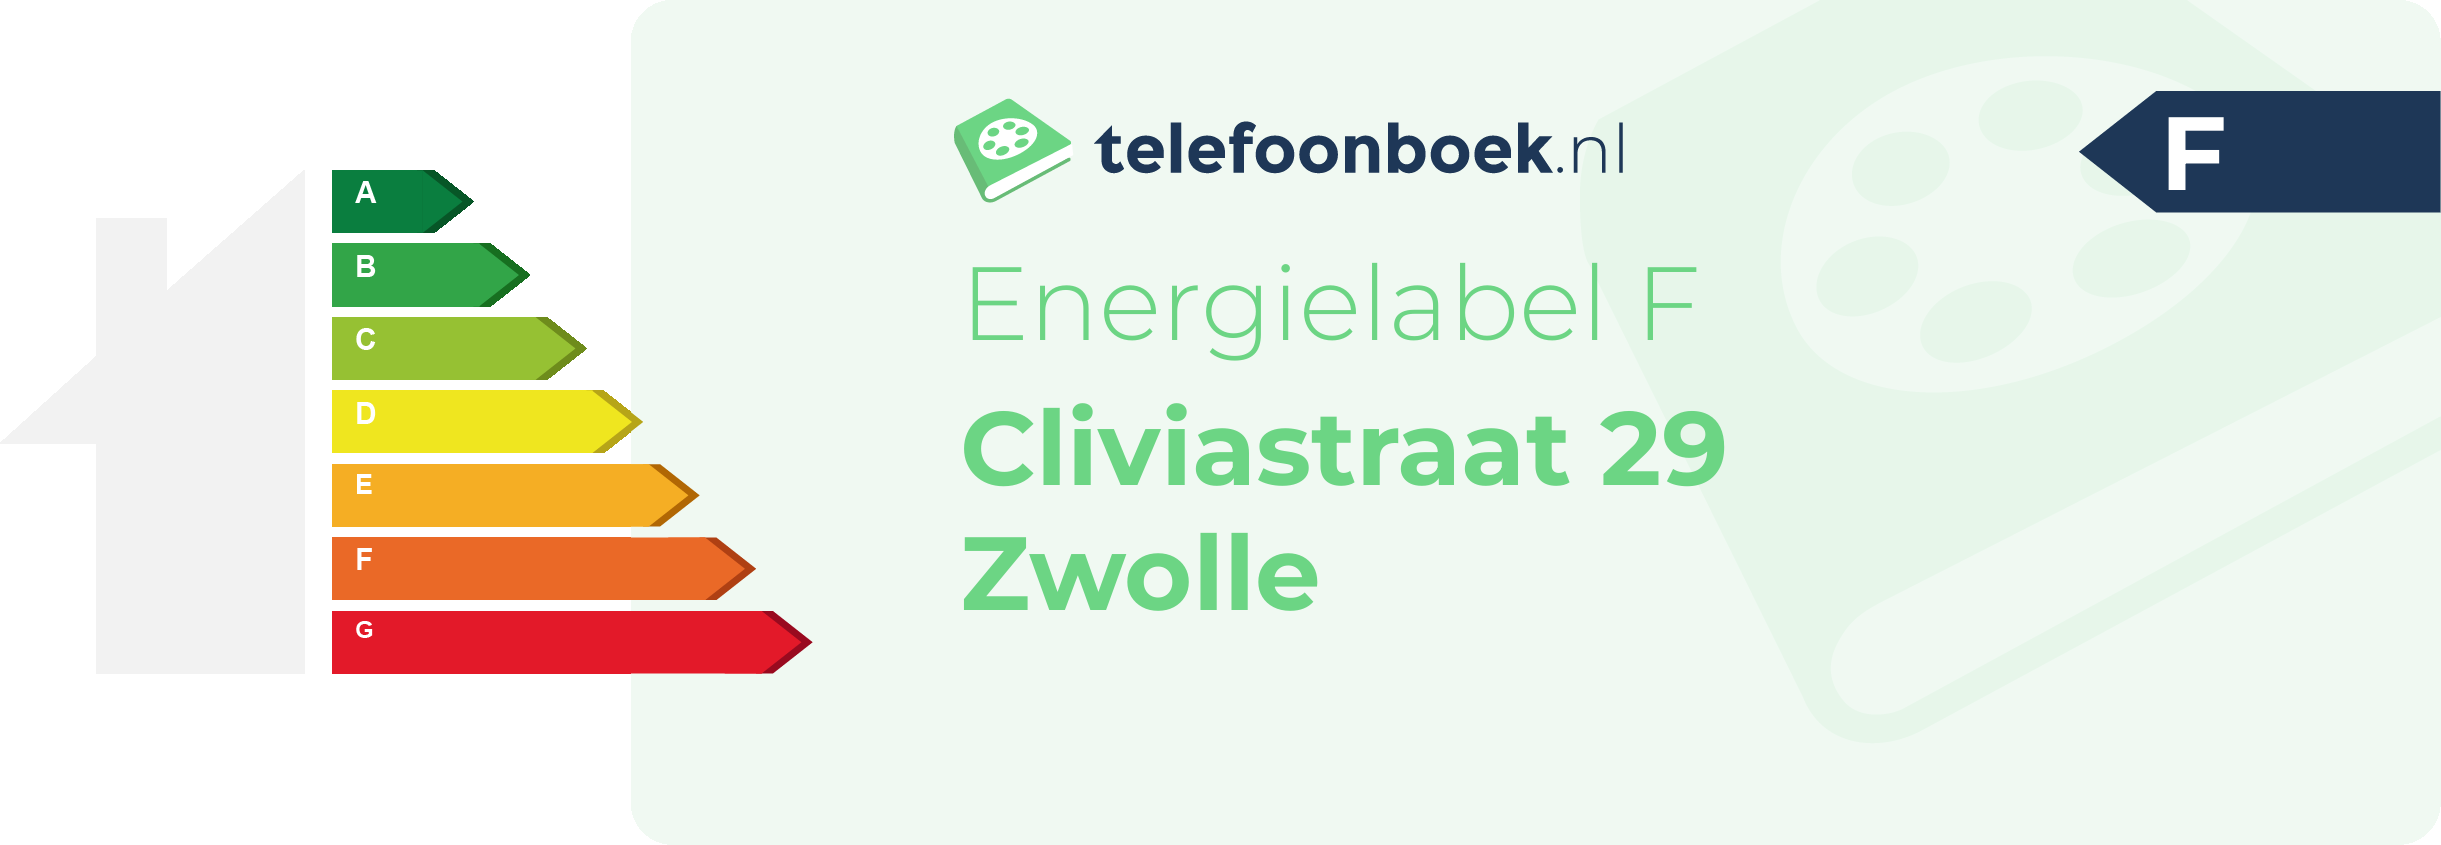 Energielabel Cliviastraat 29 Zwolle